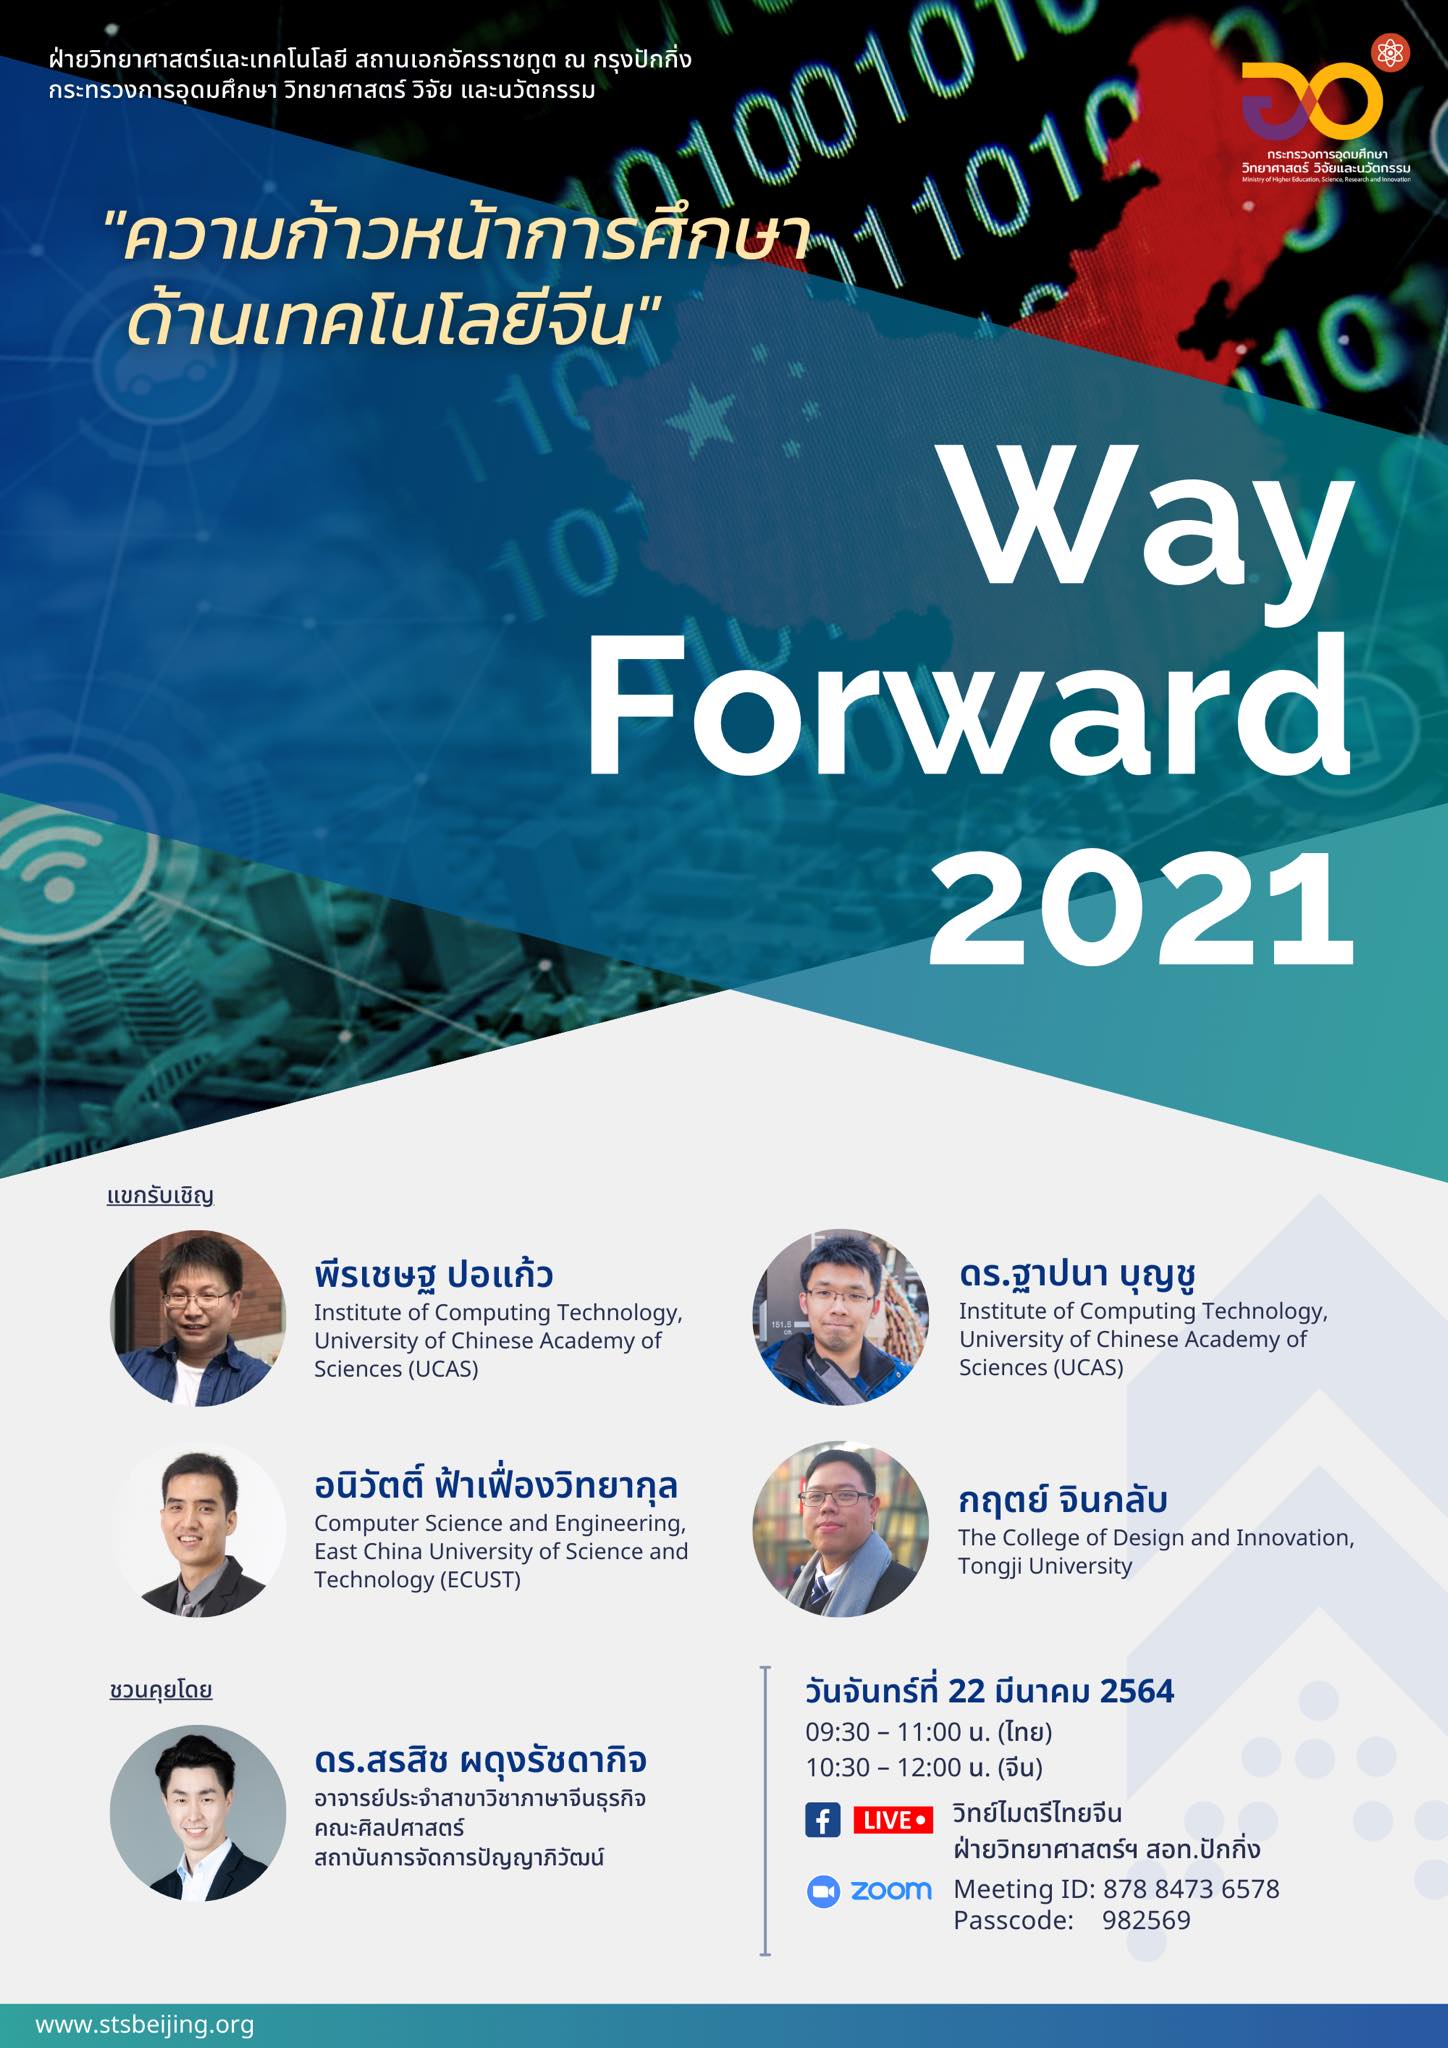 Way Forward 2021 ครั้งที่ 4 “ความก้าวหน้าการศึกษาด้านเทคโนโลยีจีน”